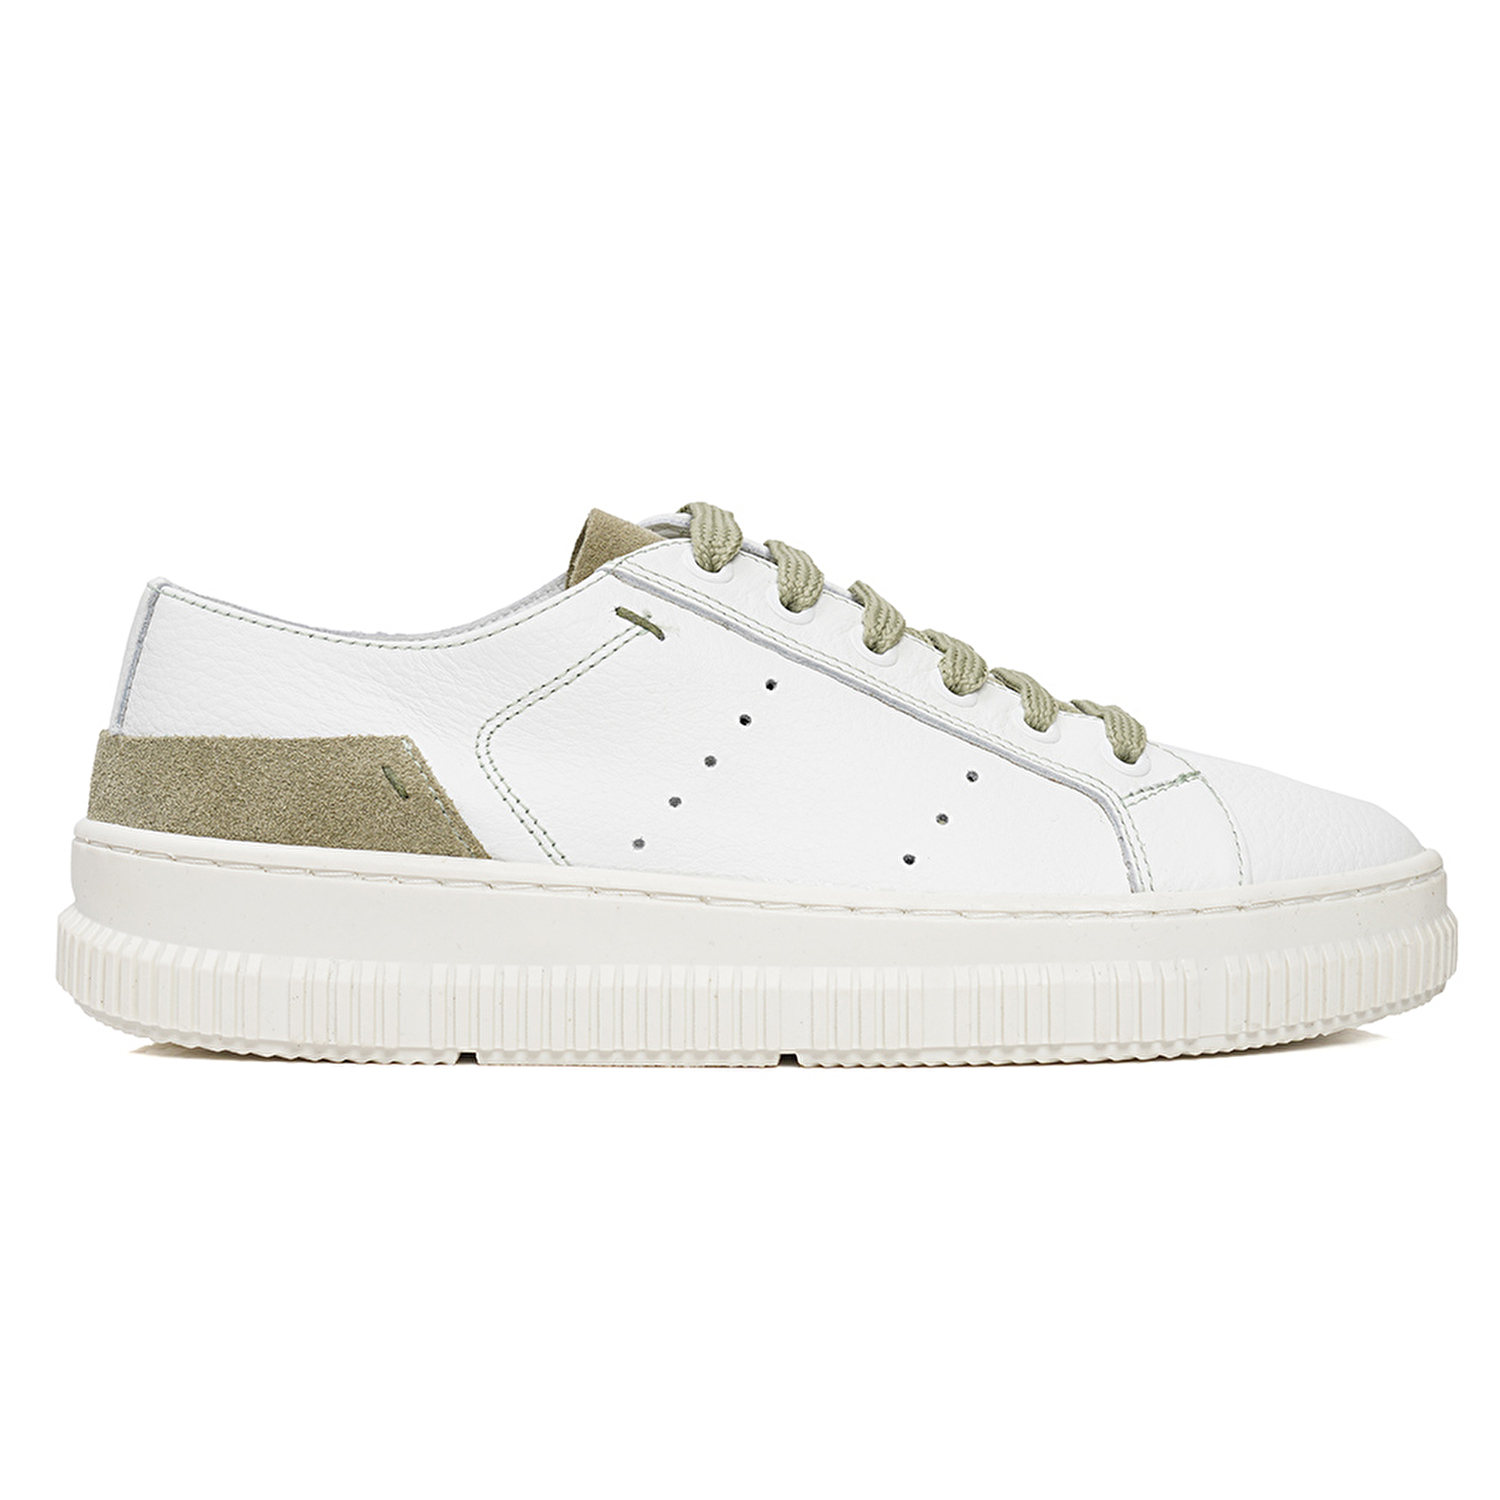 Kadın Beyaz Olive Hakiki Deri Sneaker Ayakkabı 3Y2CA50753-1